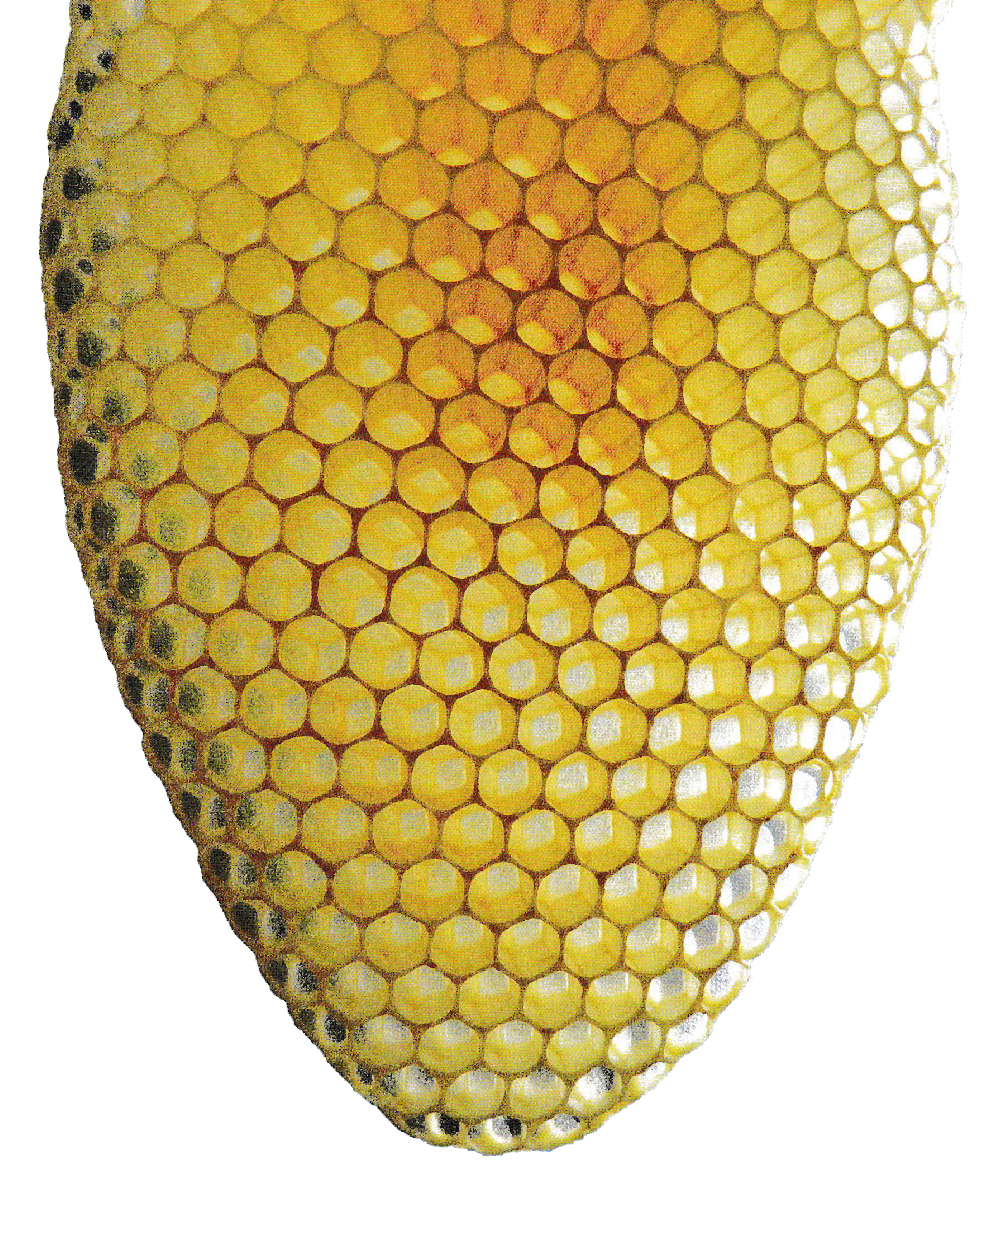 Bienenwabe